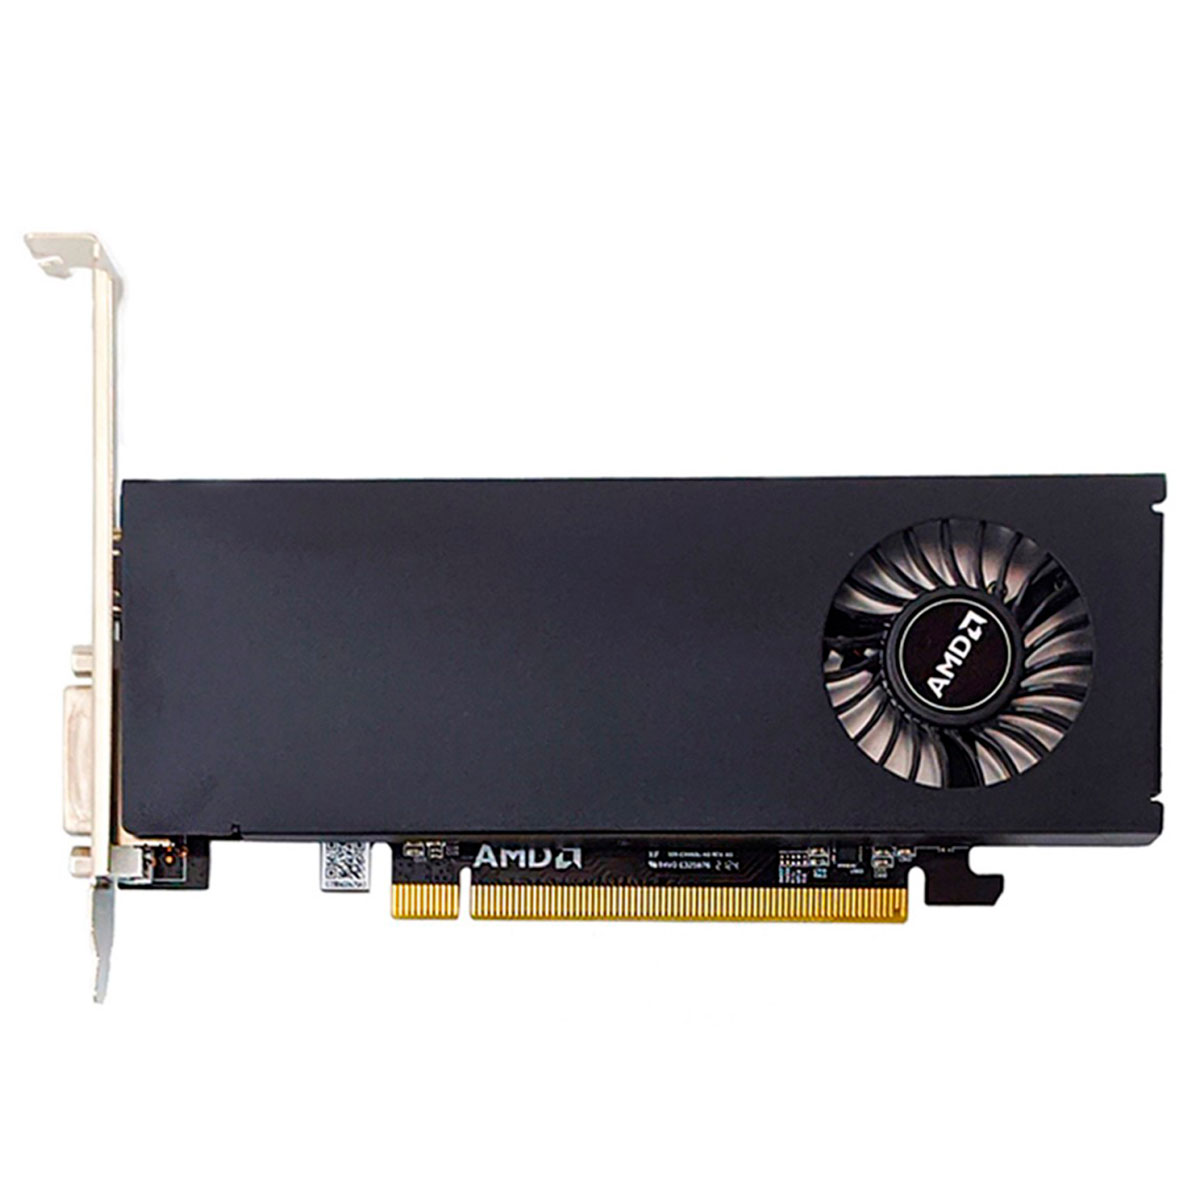 AMD Radeon RX 550 2GB GDDR5 64bits - AMD 2GBD5-HLEV2 - OEM